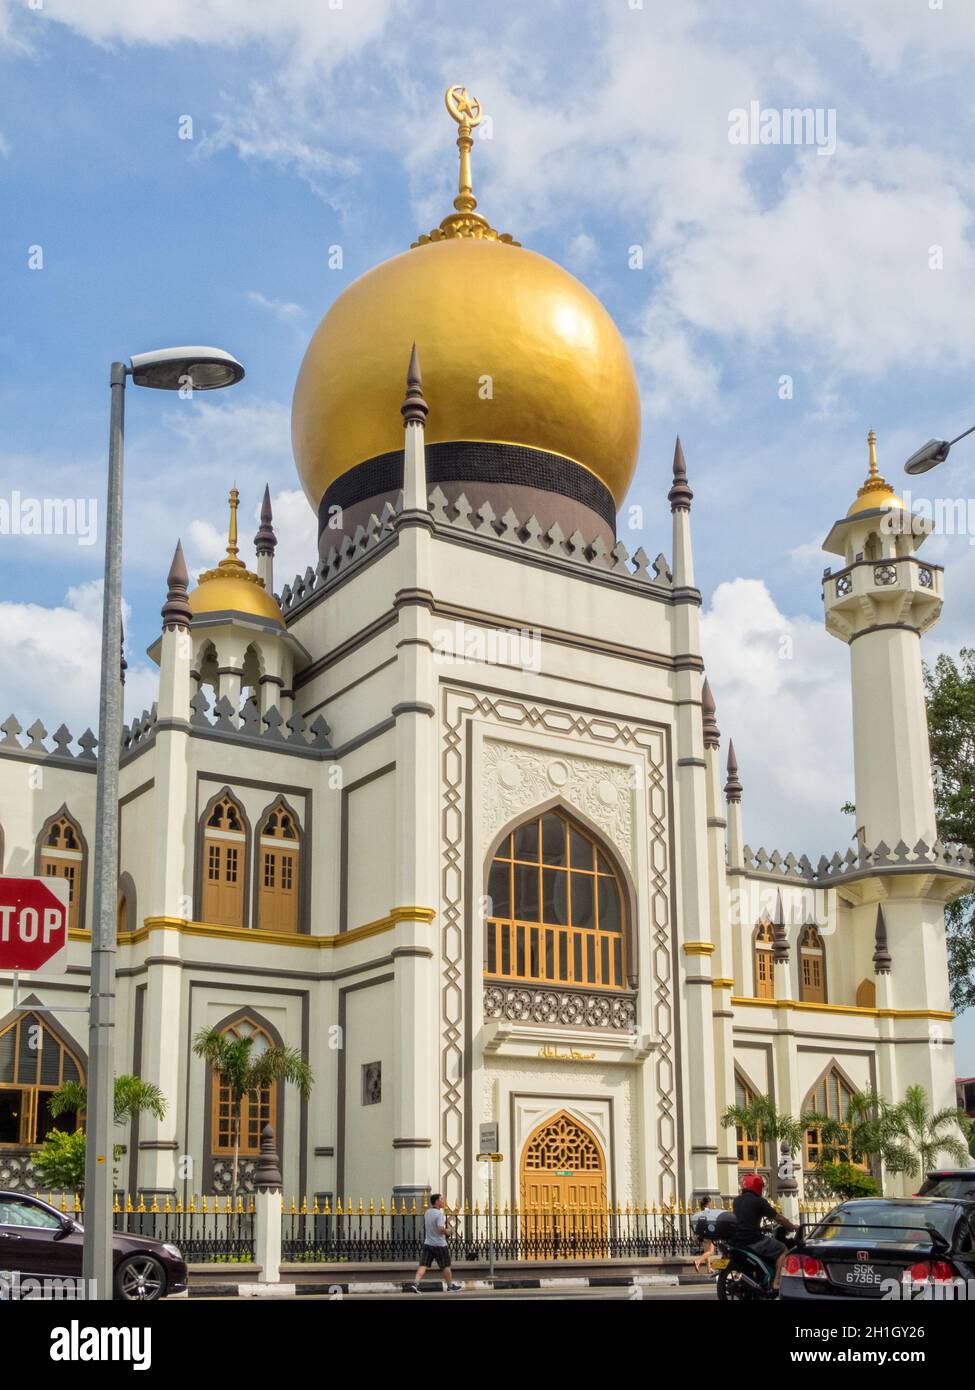 La Mezquita del Sultán o Sultán Masjid y su cúpula principal de cebolla dorada - Singapur Foto de stock